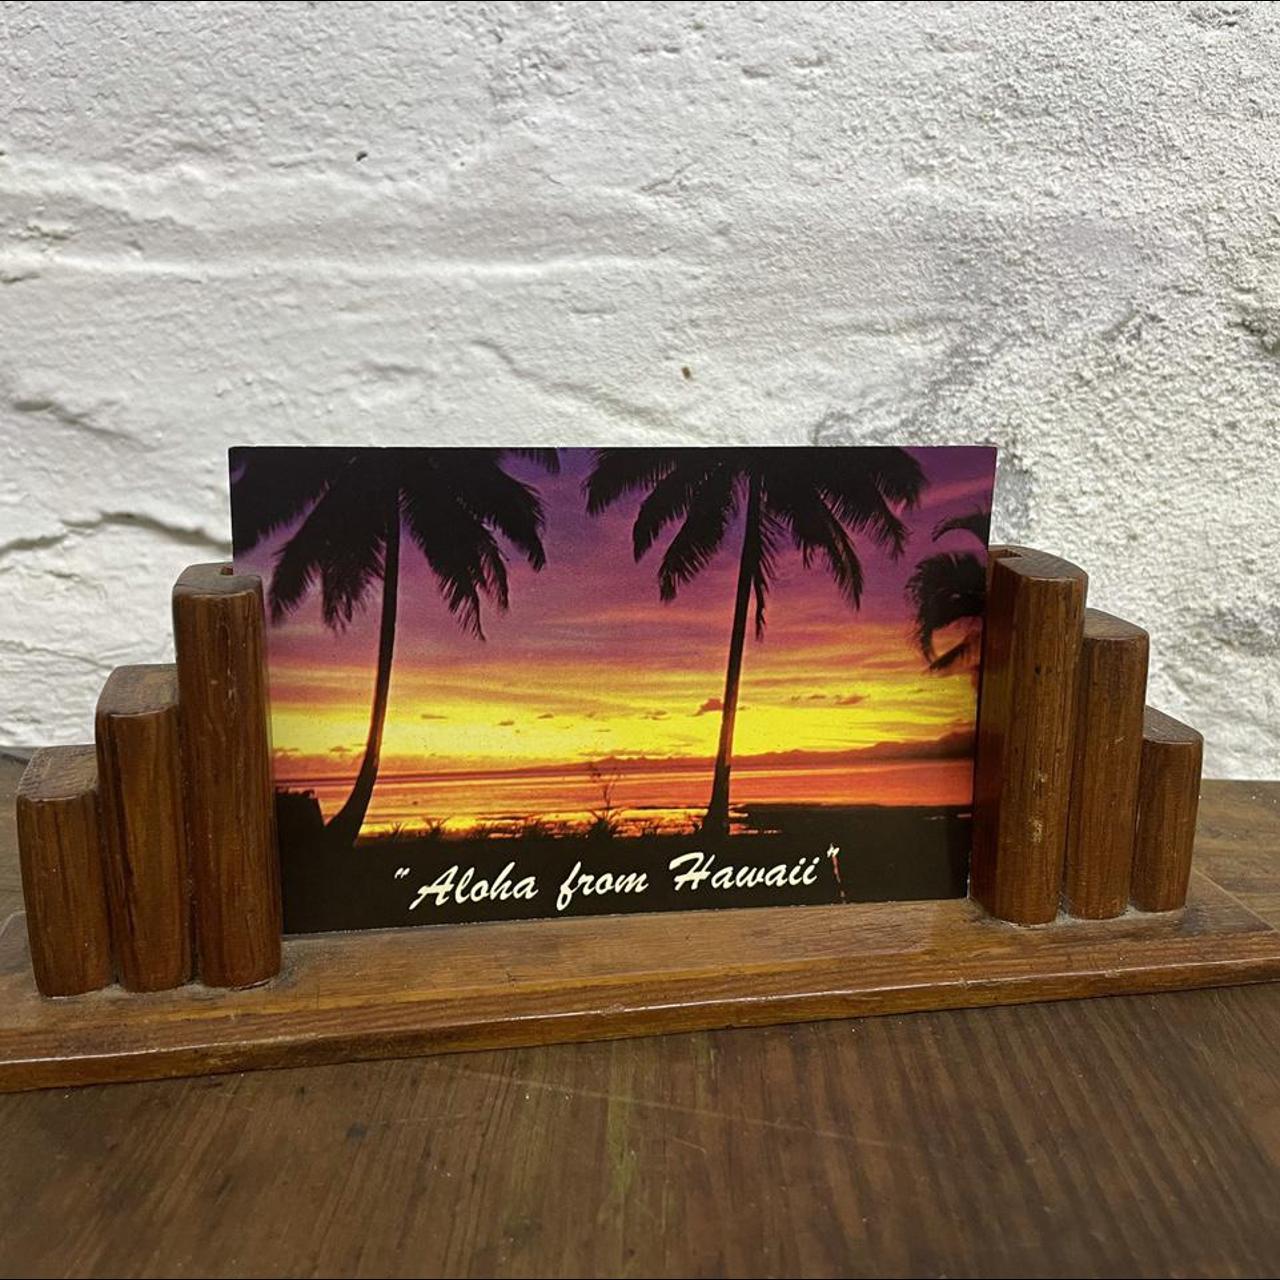 Product Image 1 - Vintage Tropical Sunset postcard, ~1970s
“Aloha